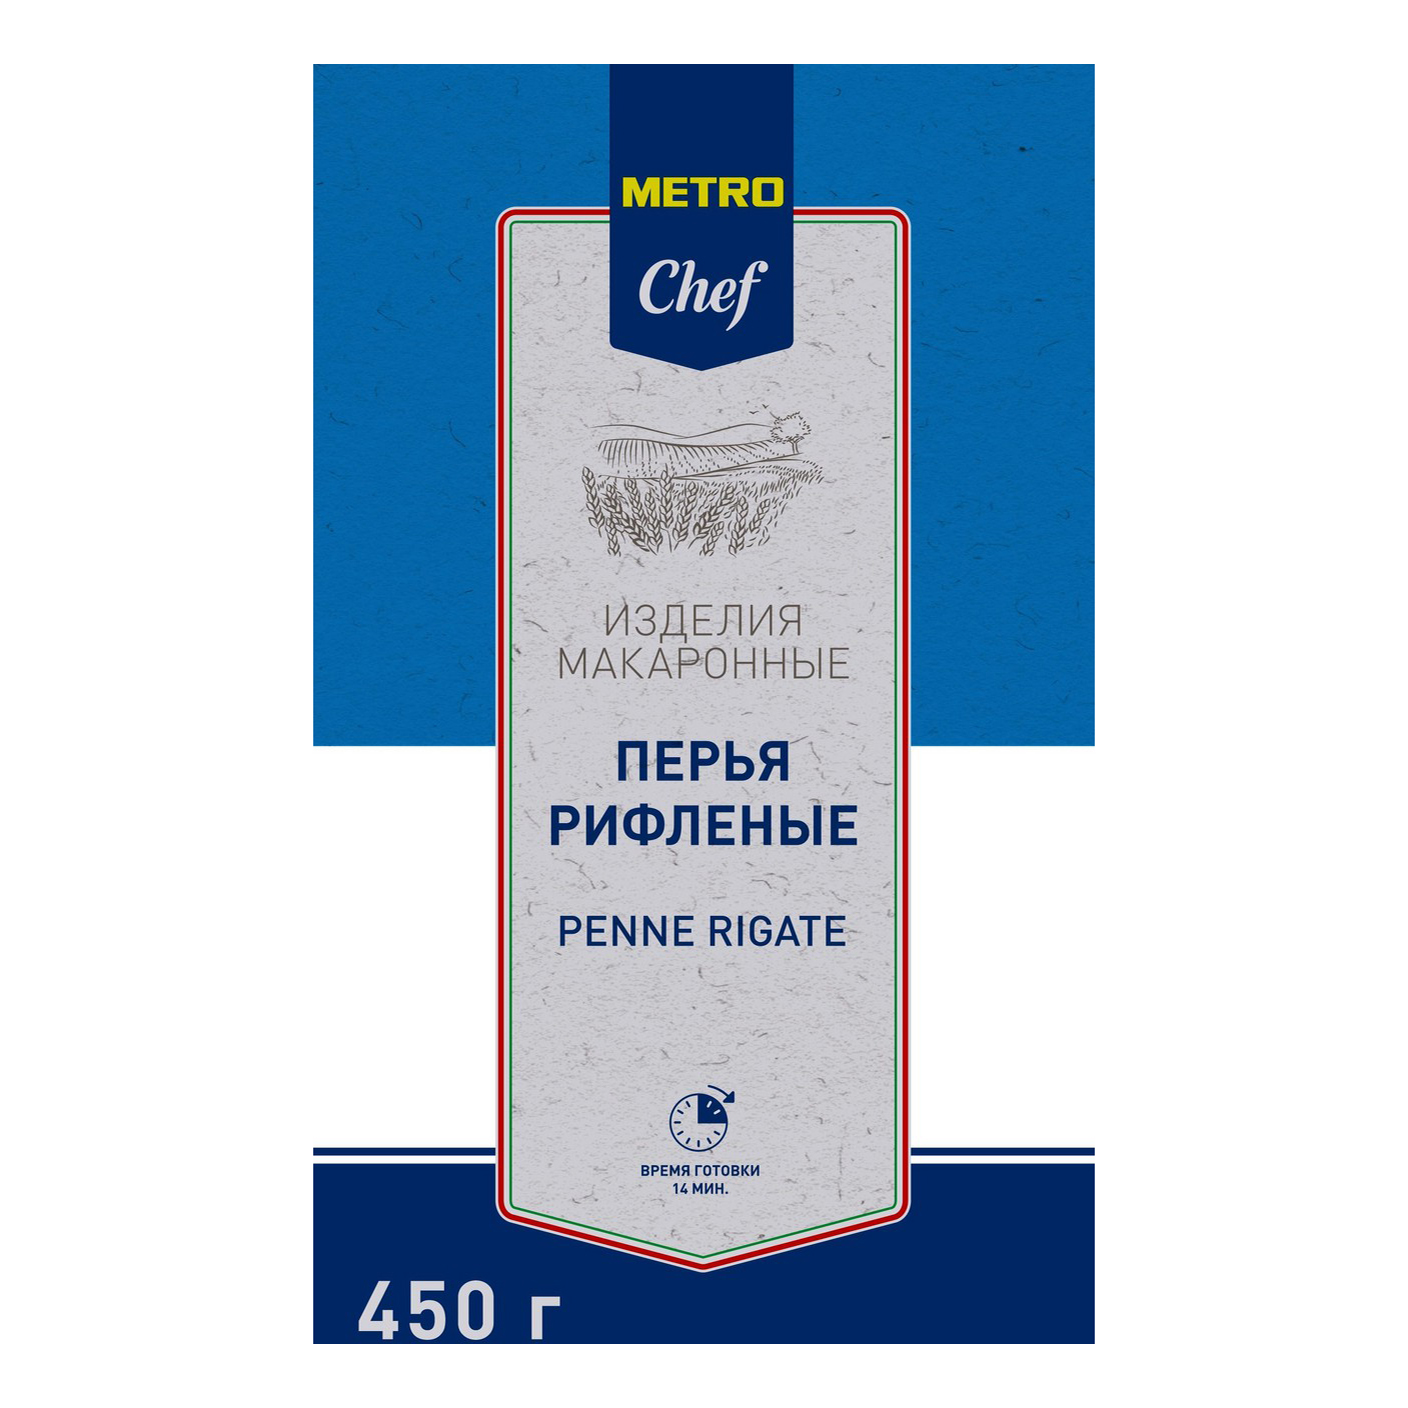 Макаронные изделия Metro Chef Перья 450 г